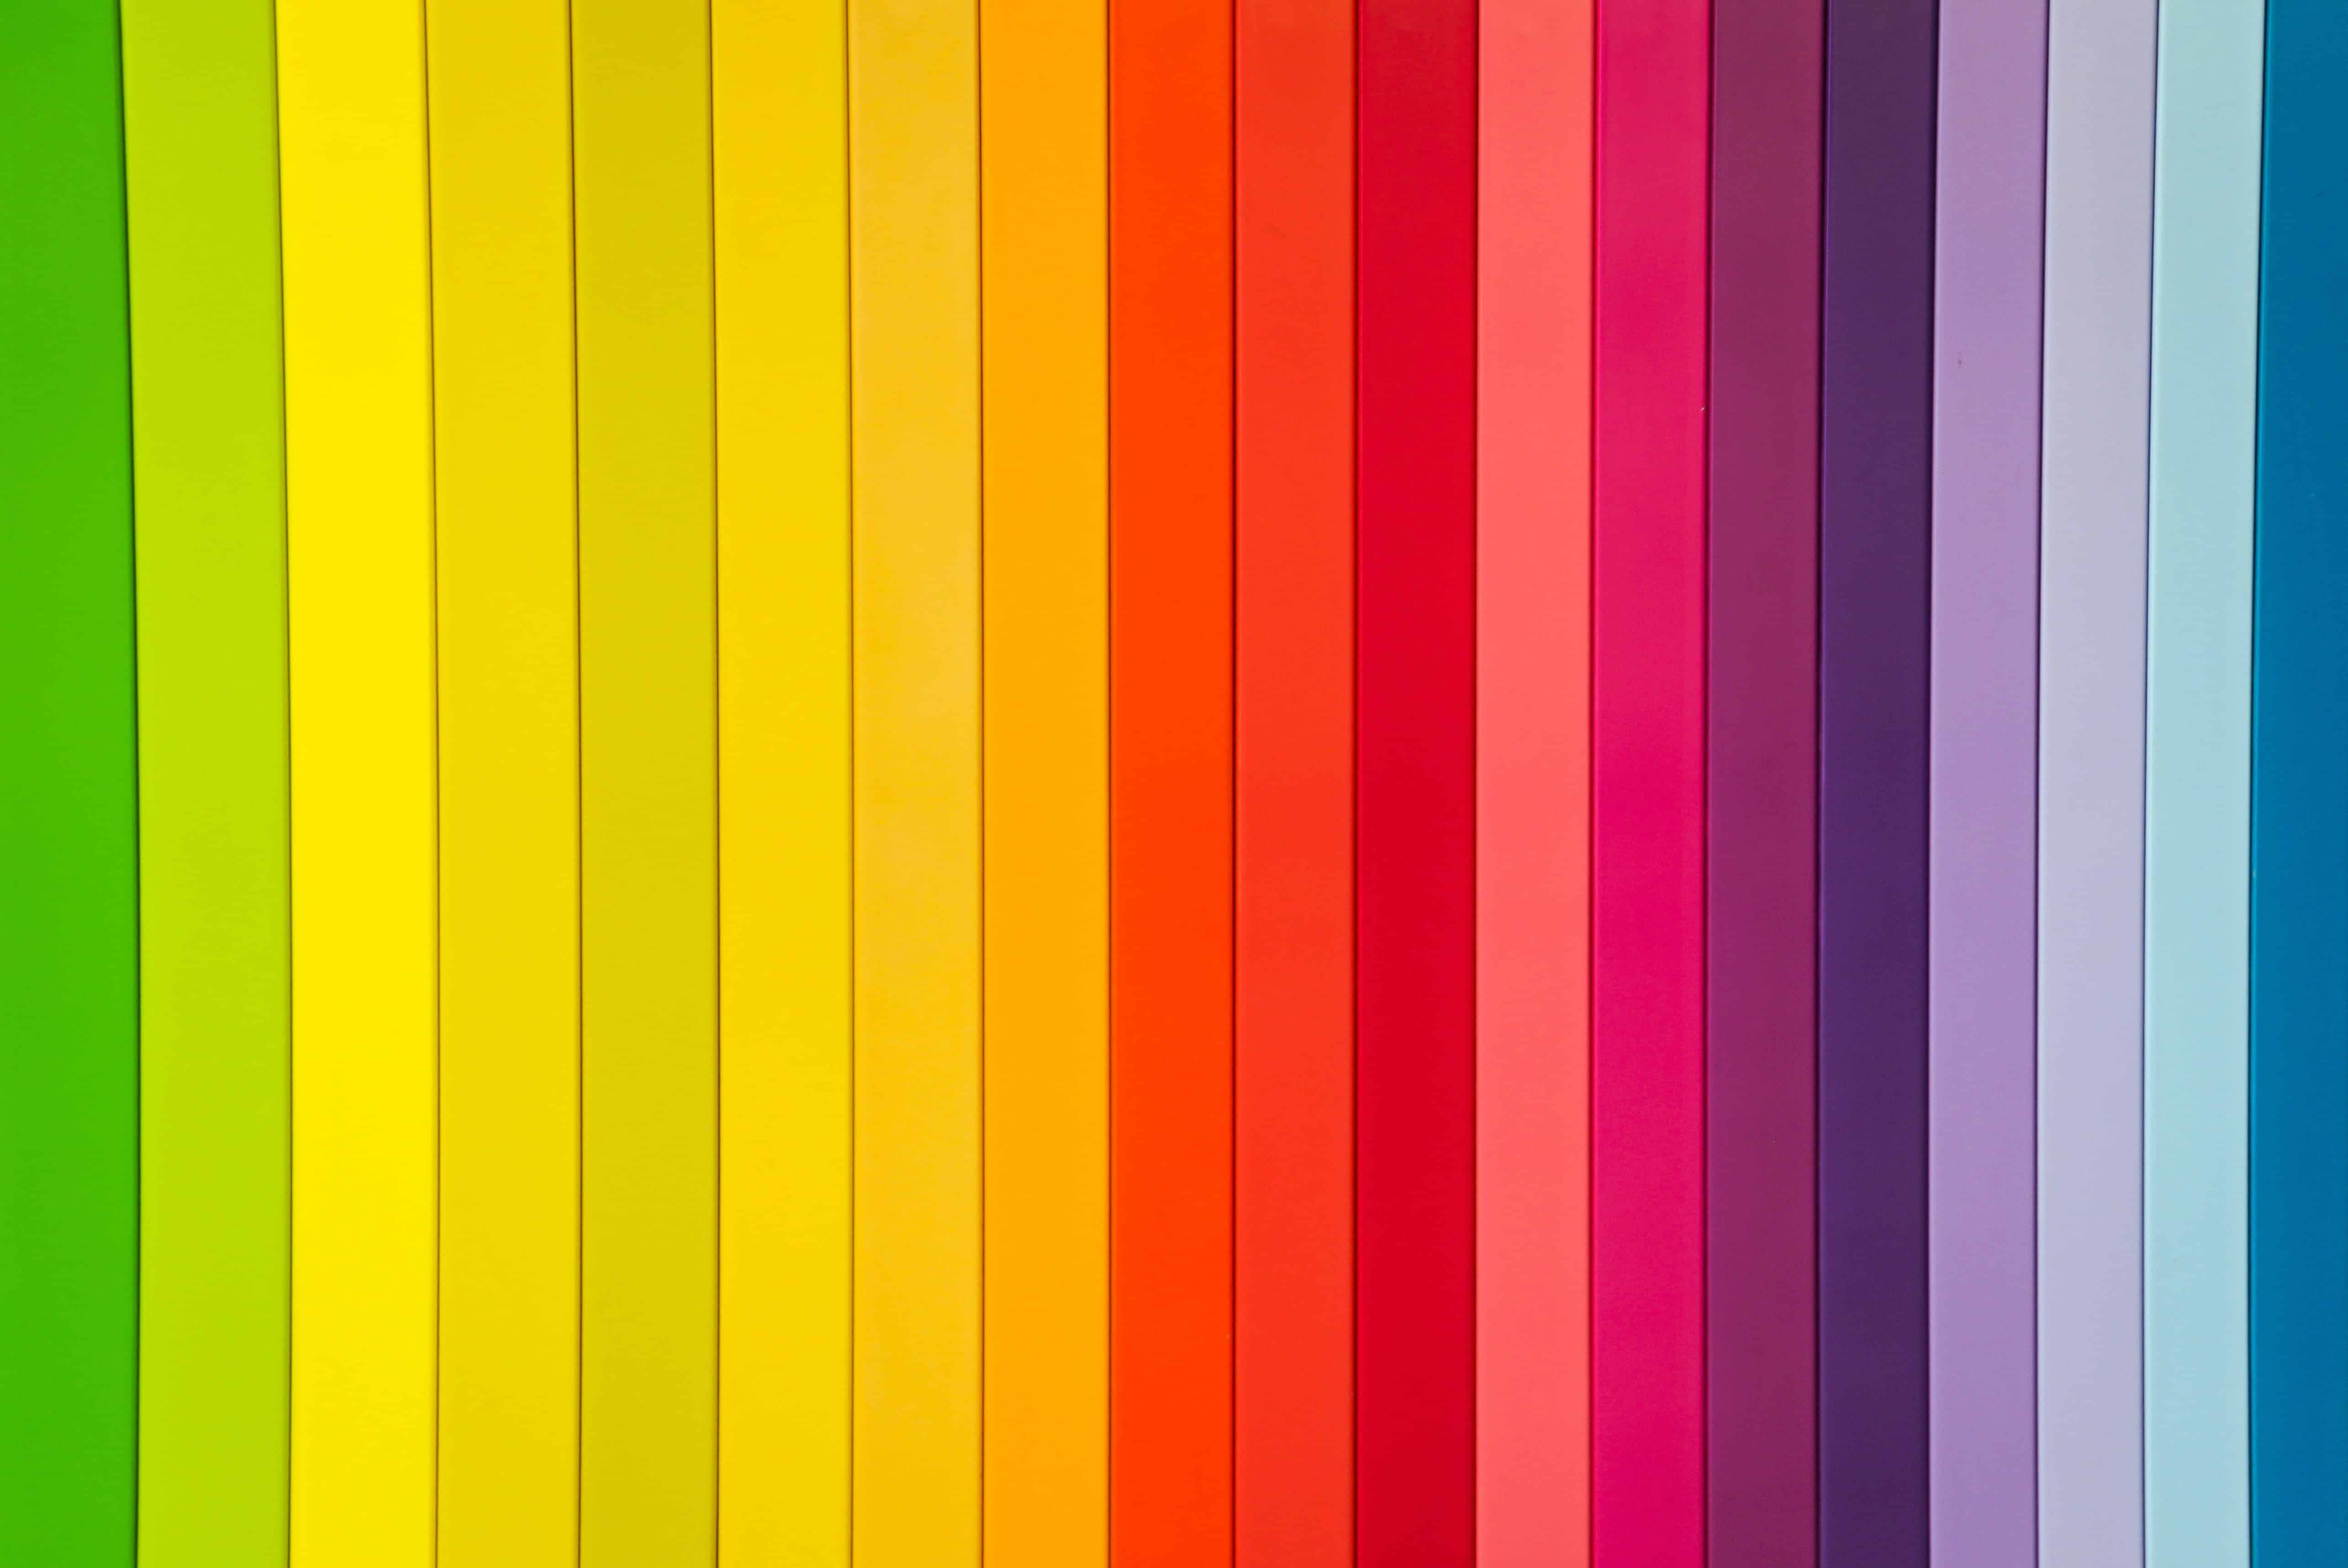 Color Theory Basics: Hiểu sâu hơn về lý thuyết màu sắc và cách sử dụng chúng để tối đa hóa trải nghiệm của người dùng. Tìm hiểu cách tương phản màu sắc và áp dụng chúng để tạo nên hiệu ứng đẹp mắt trên trang web của bạn. Đặt chân vào thế giới màu sắc với các kiến thức cơ bản về lý thuyết màu sắc.